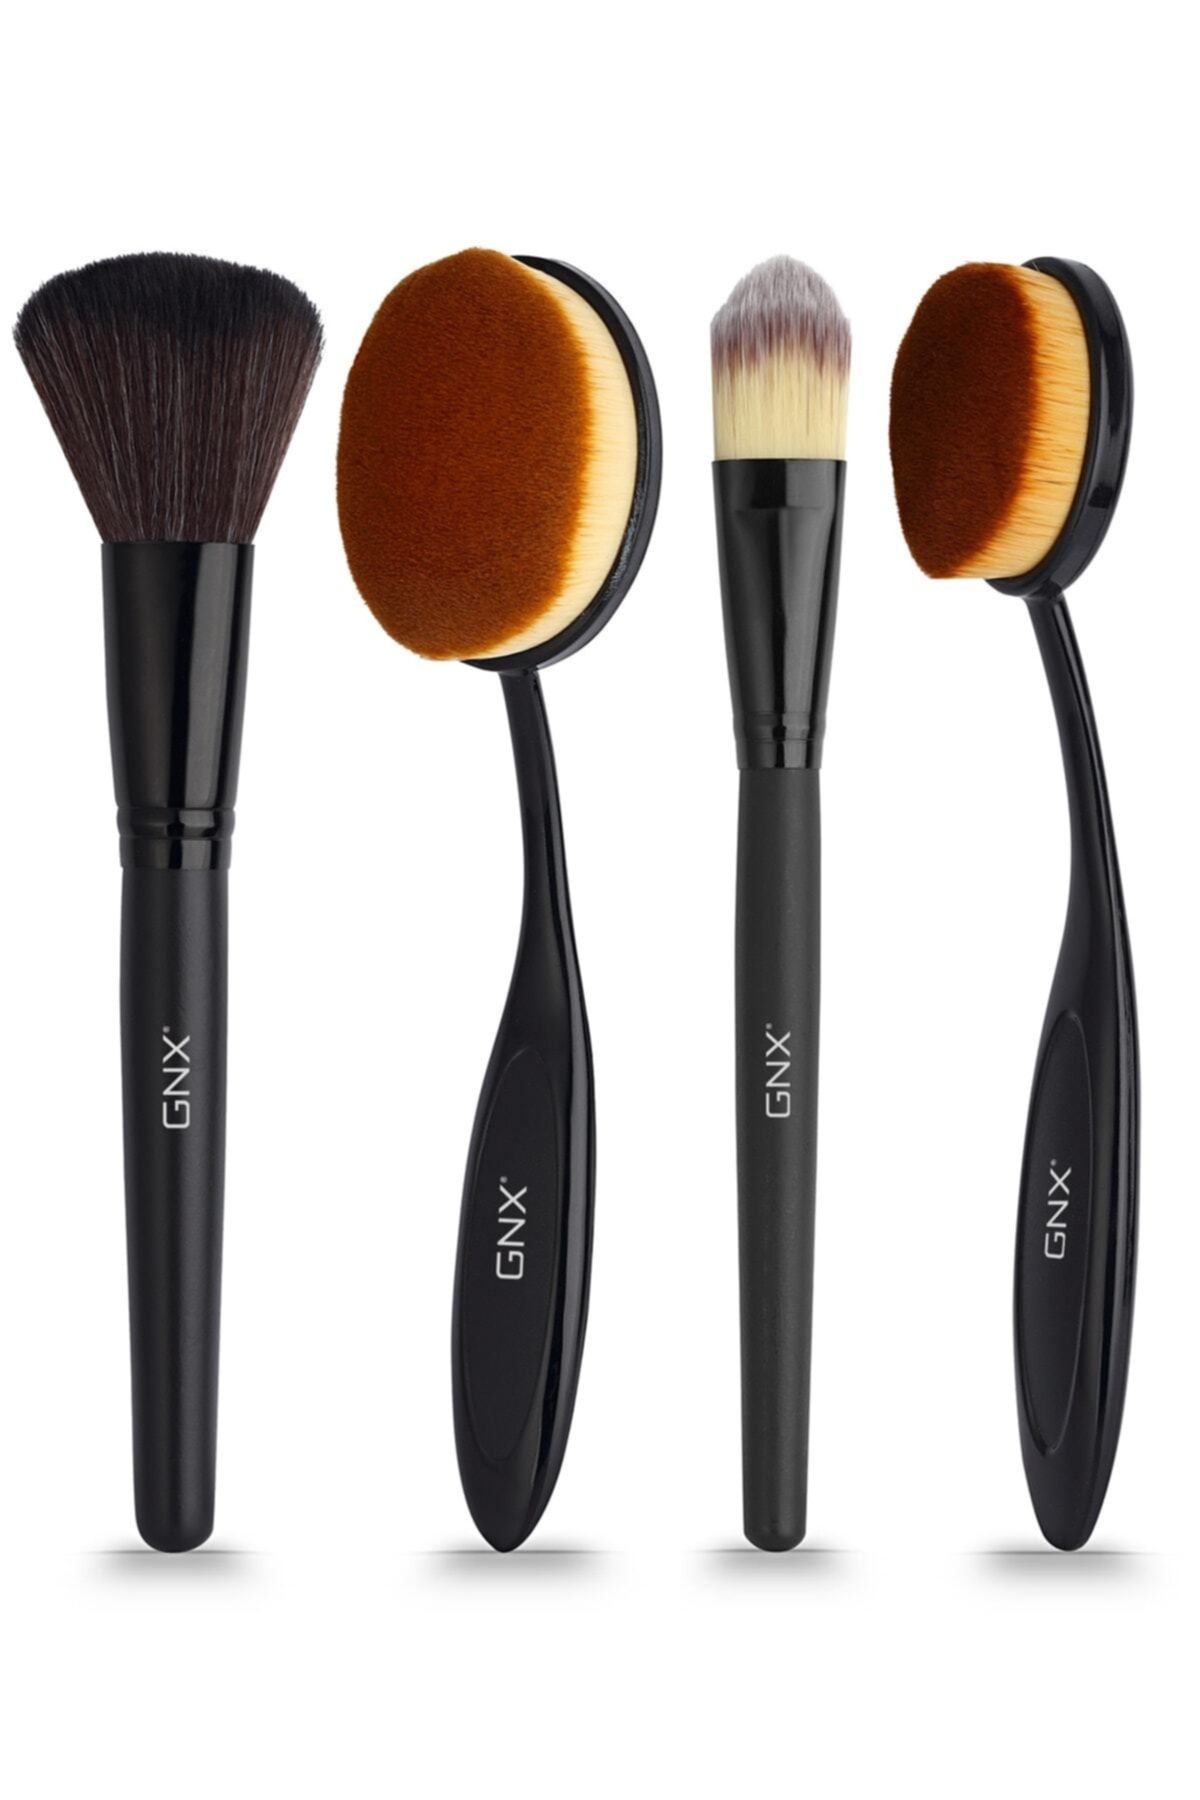 GNX 4'lü Makyaj Fırça Seti - 4 Pcs Makeup Brushes Set